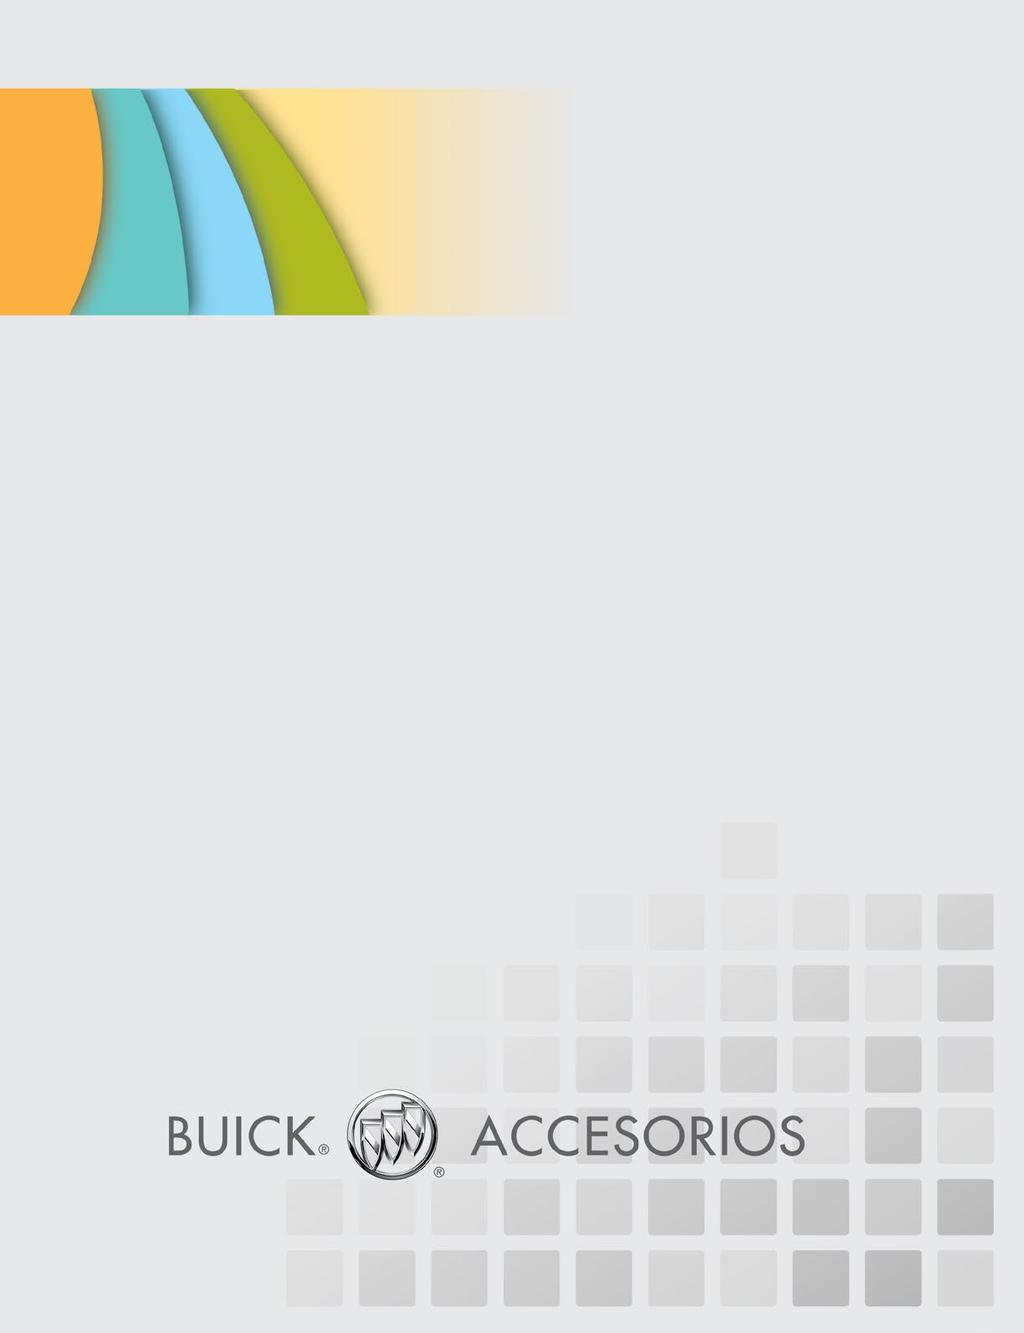 CONVENIENCIA Con los Accesorios Buick originales puedes adquirir e instalar tus accesorios en una sola ocasión, en caso de